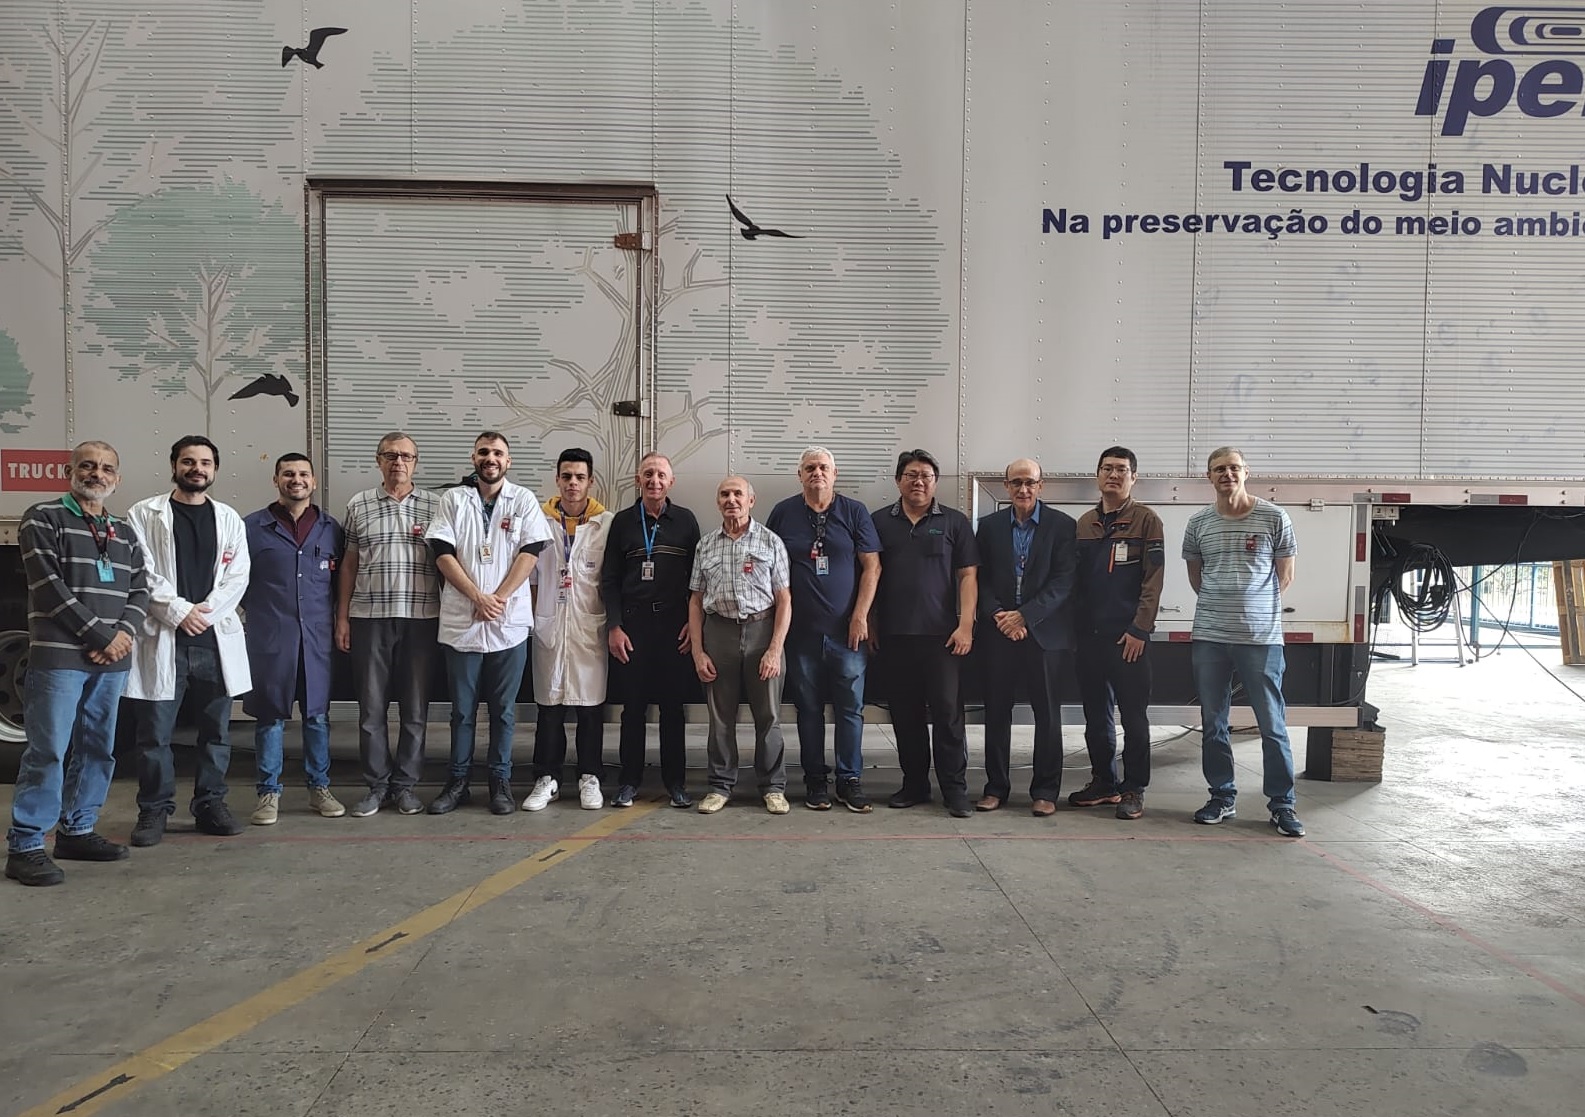 Участники монтажа мобильного промышленного ускорителя в IPEN Бразилия. Фото предоставлено А. И. Корчагиным